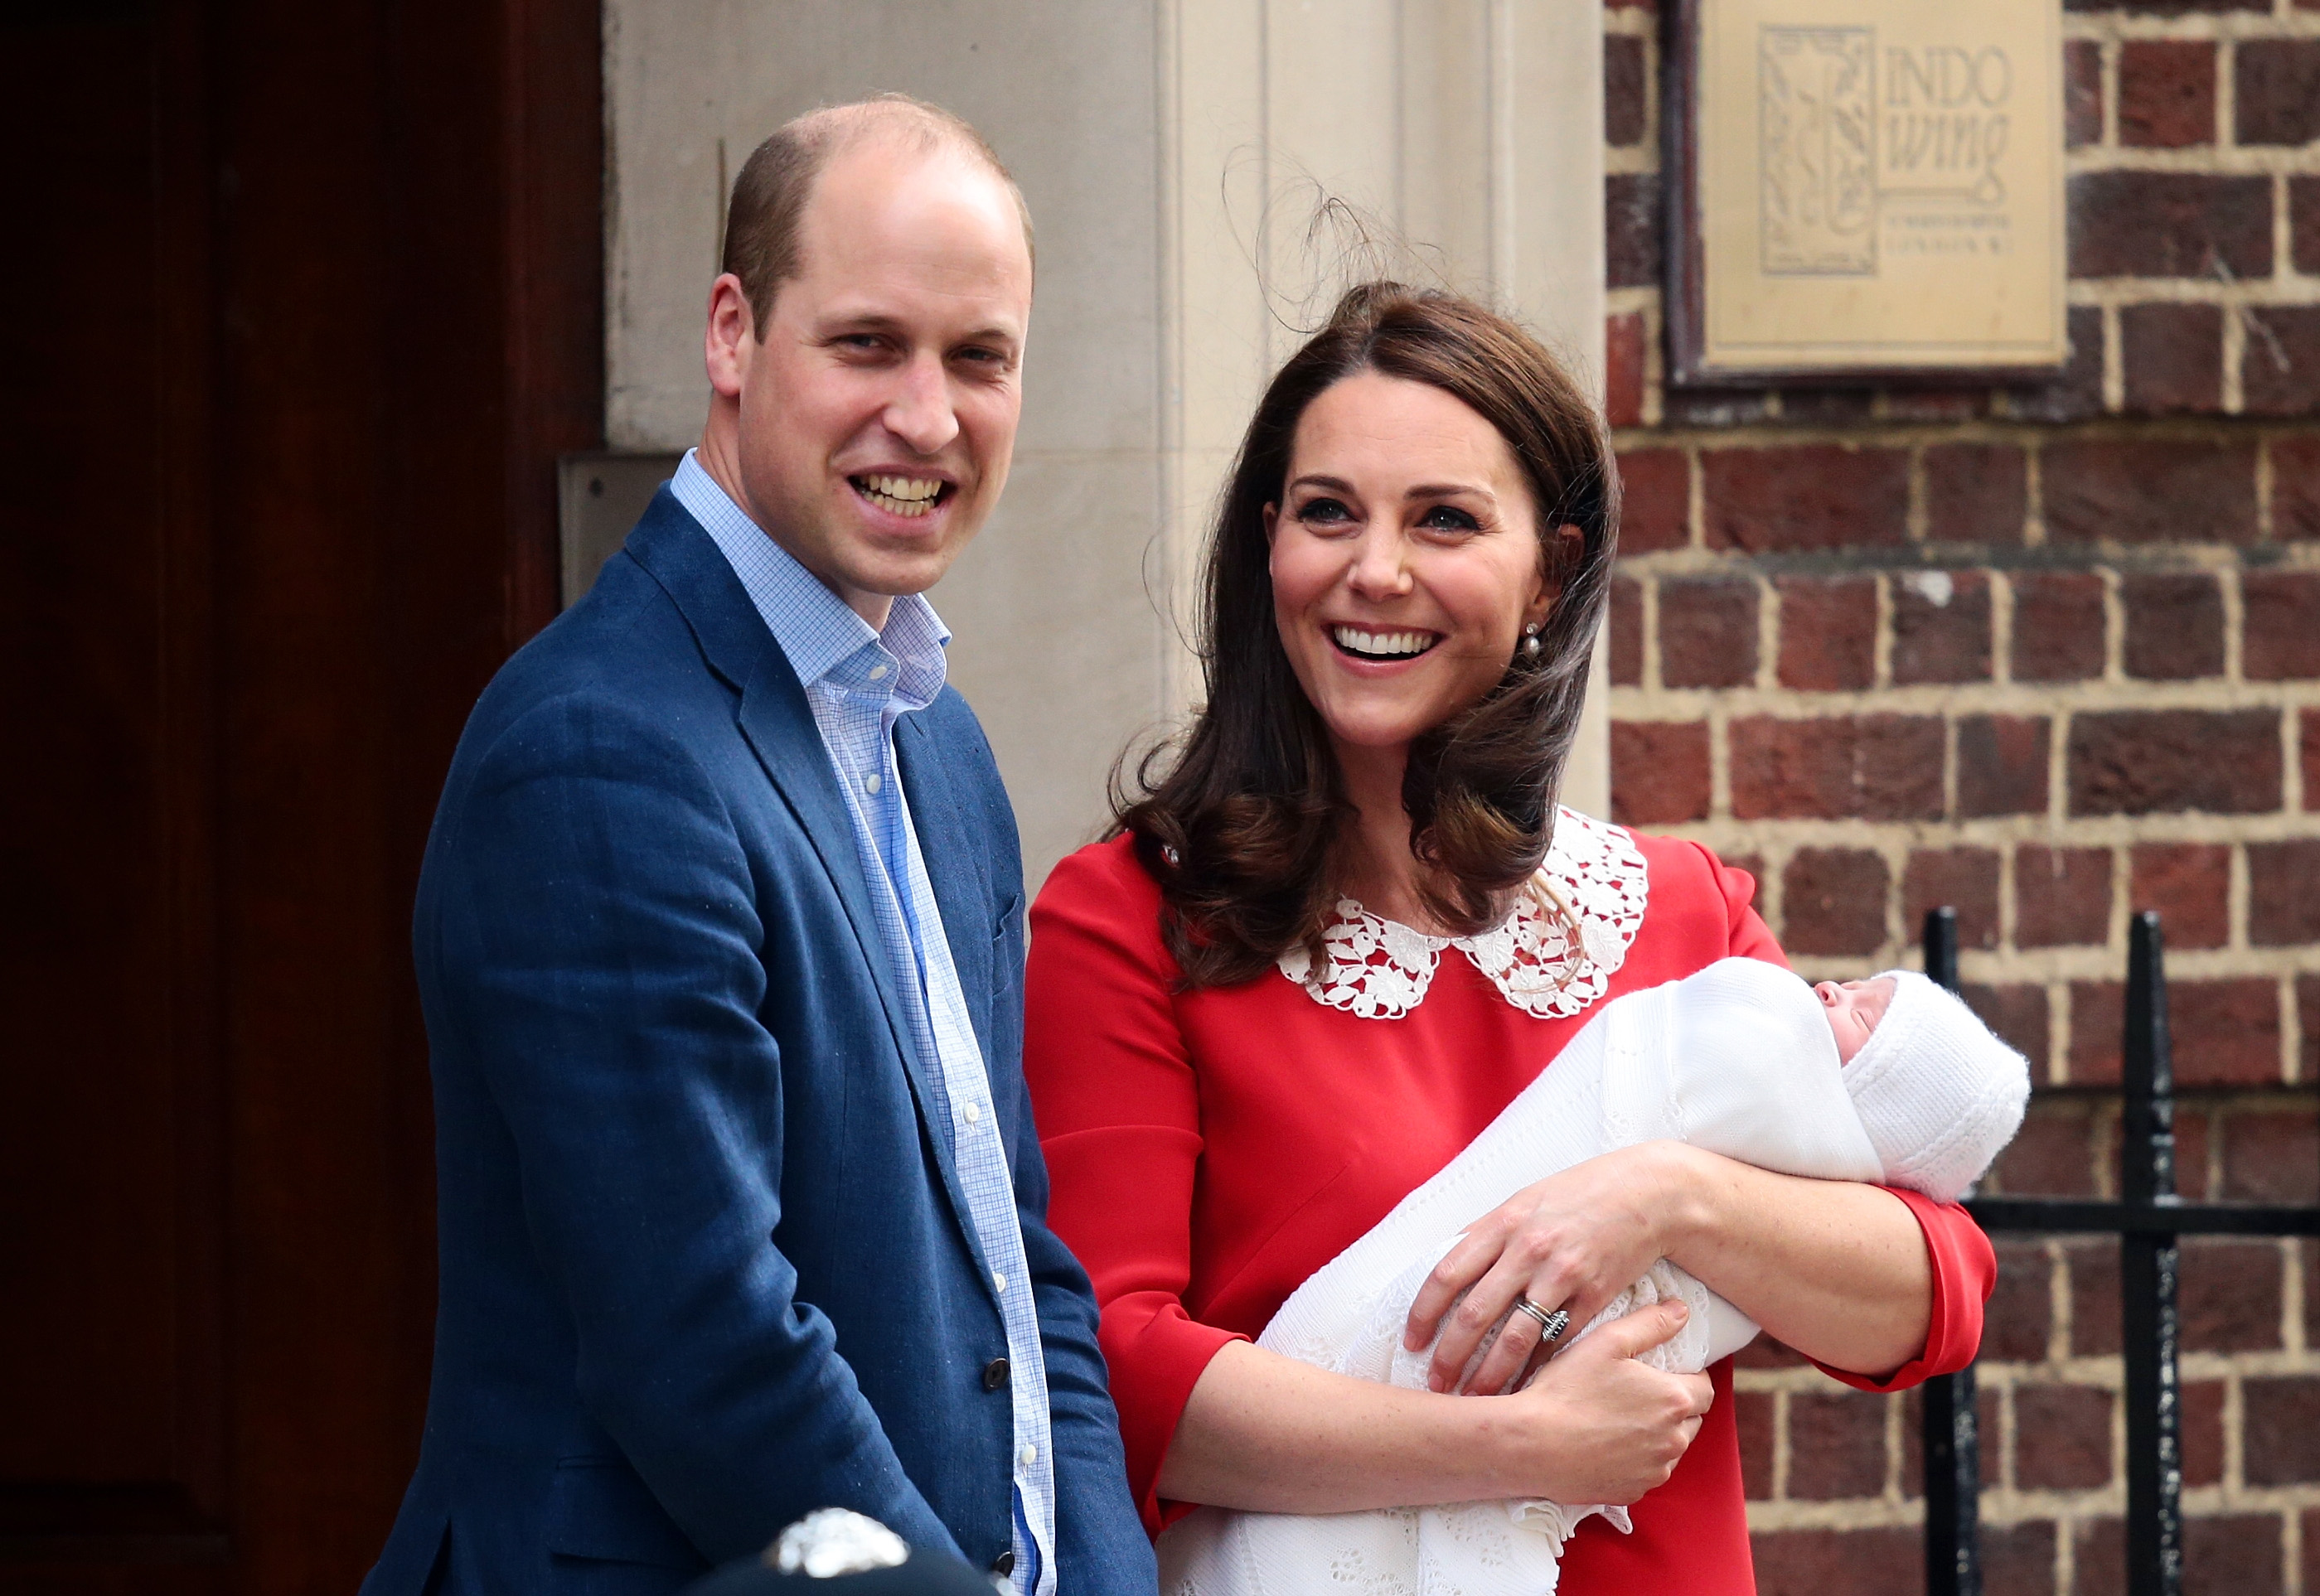 Херцогинята на Кеймбридж Катрин роди момче в 11 ч. местно време. Бебето и майката са в добро здраве. Бебето тежи 3,827 кг и е третото дете в семейството на херцогинята и принц Уилям, който е присъствал по време на раждането. Няколко часа след раждането, Кейт и принц Уилям напуснаха болницата с новороденото момченце.